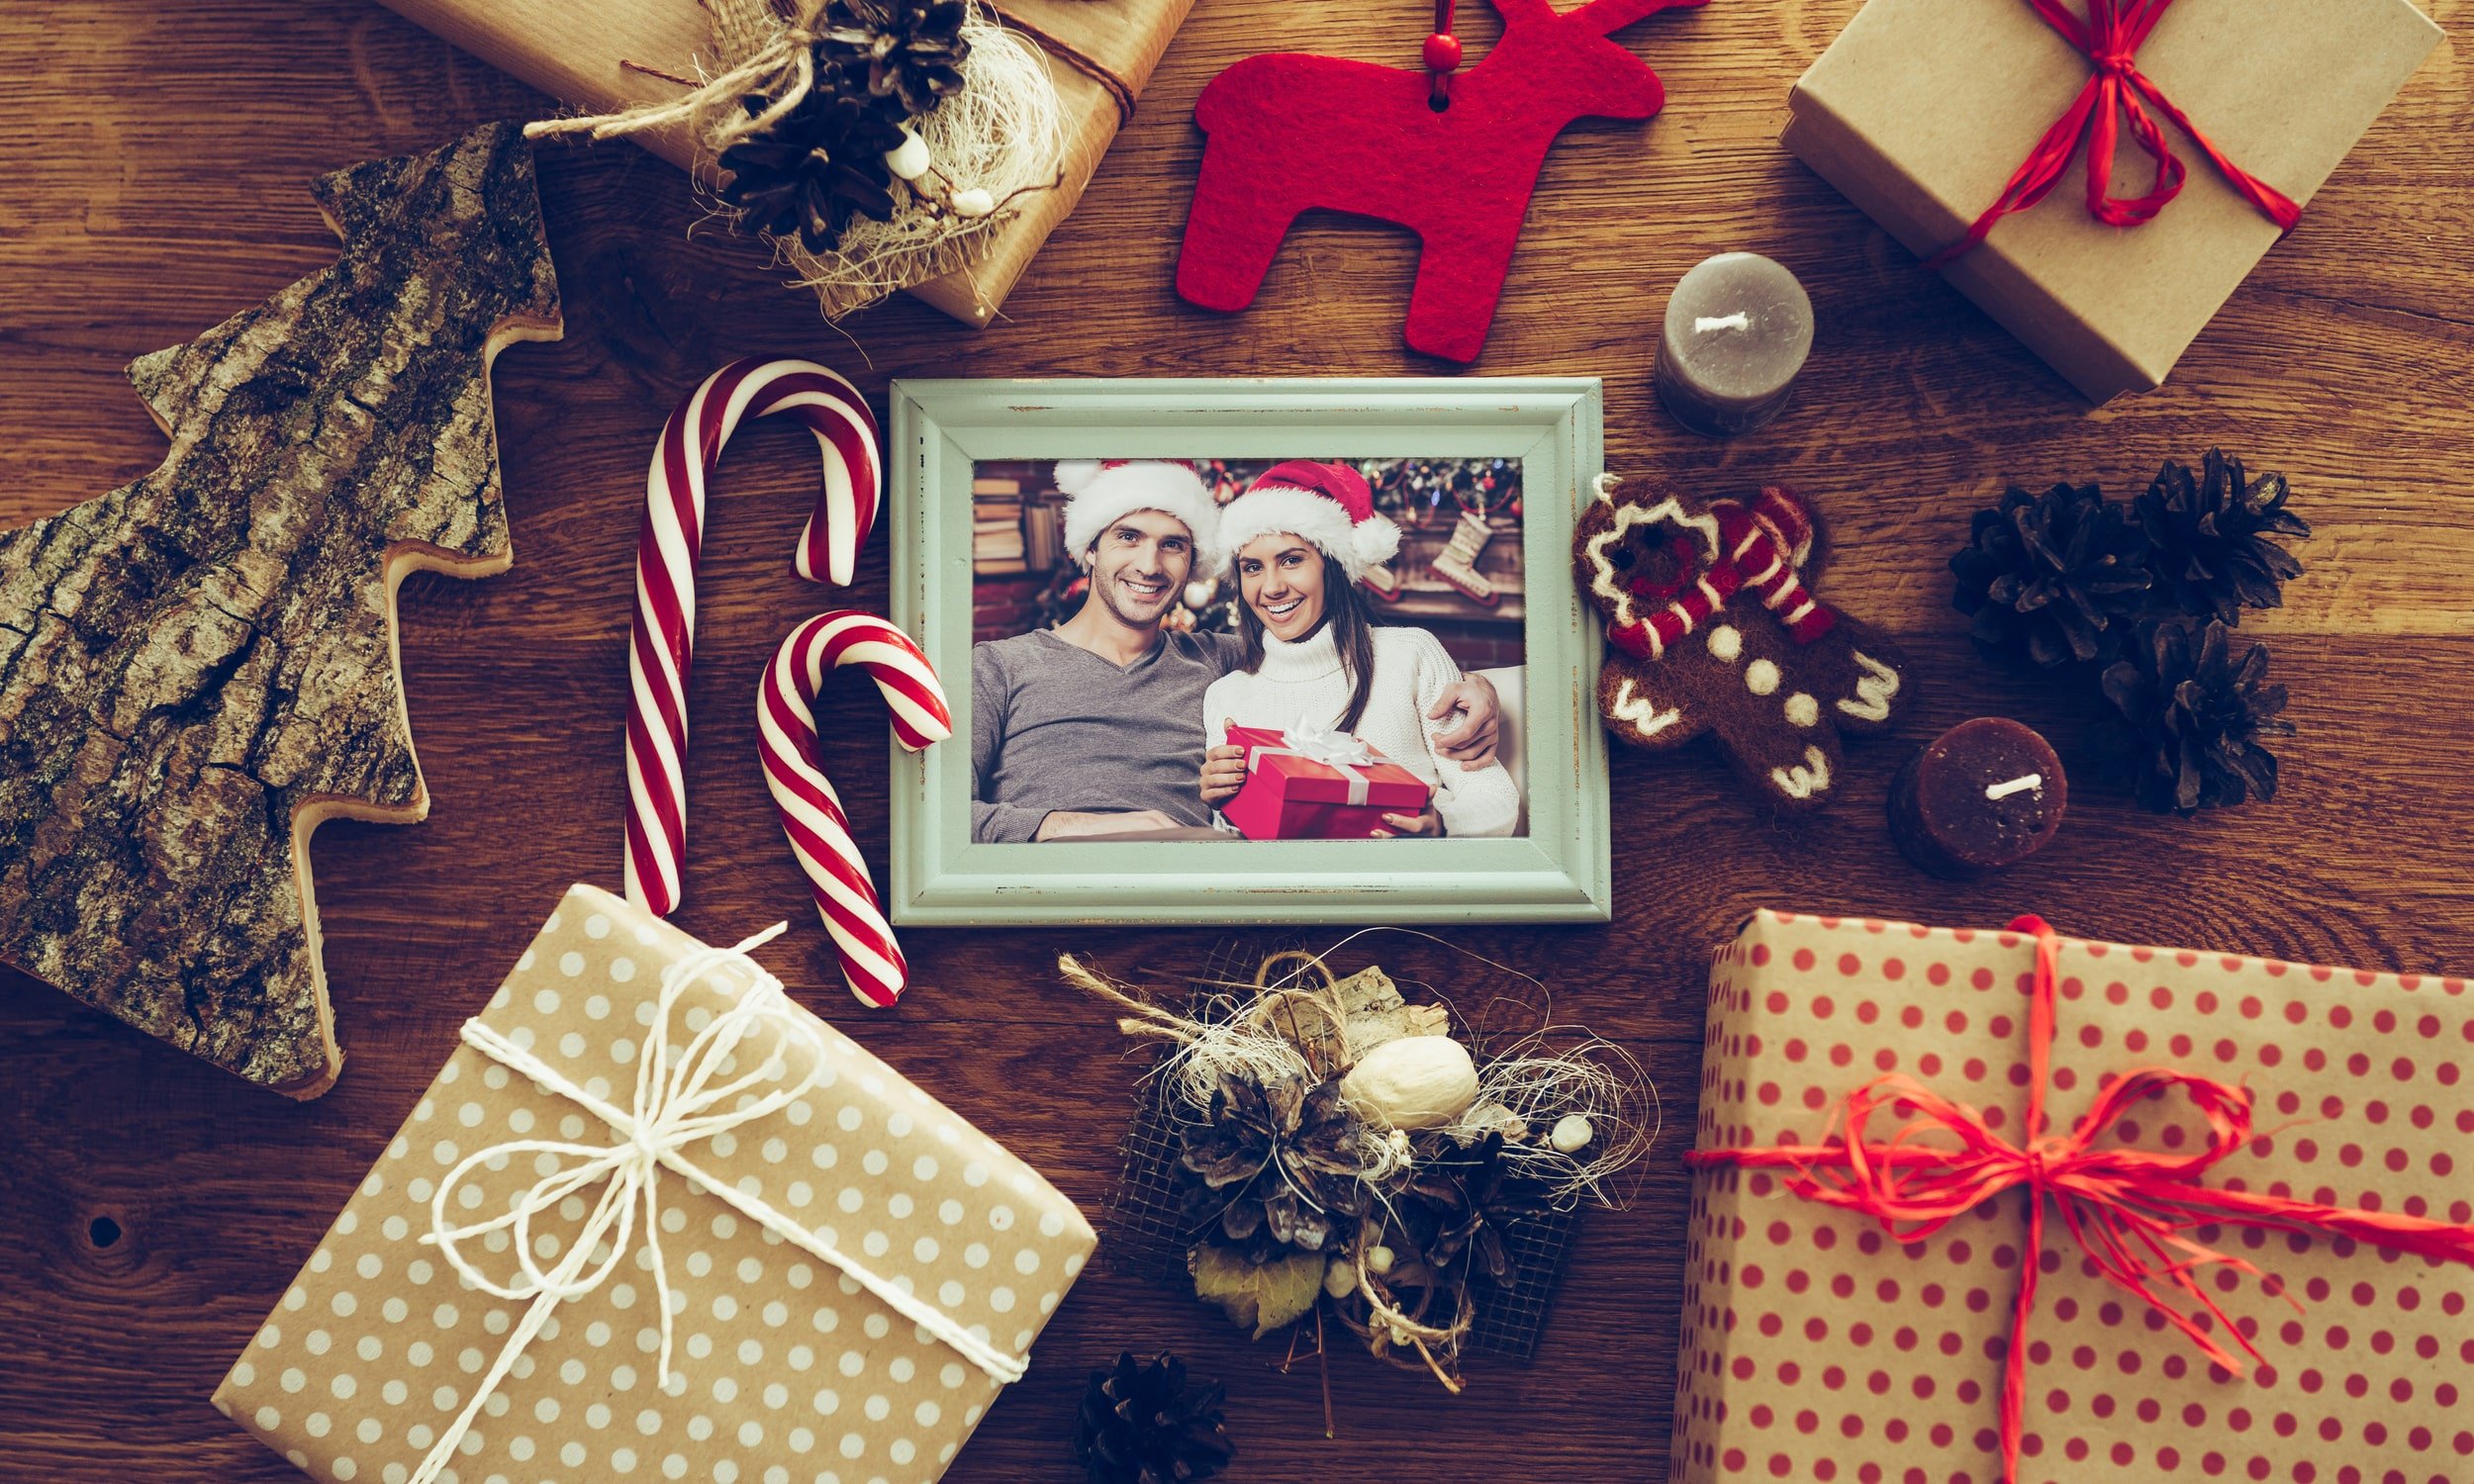 рождественские подарки и фото пары в рамке на столе